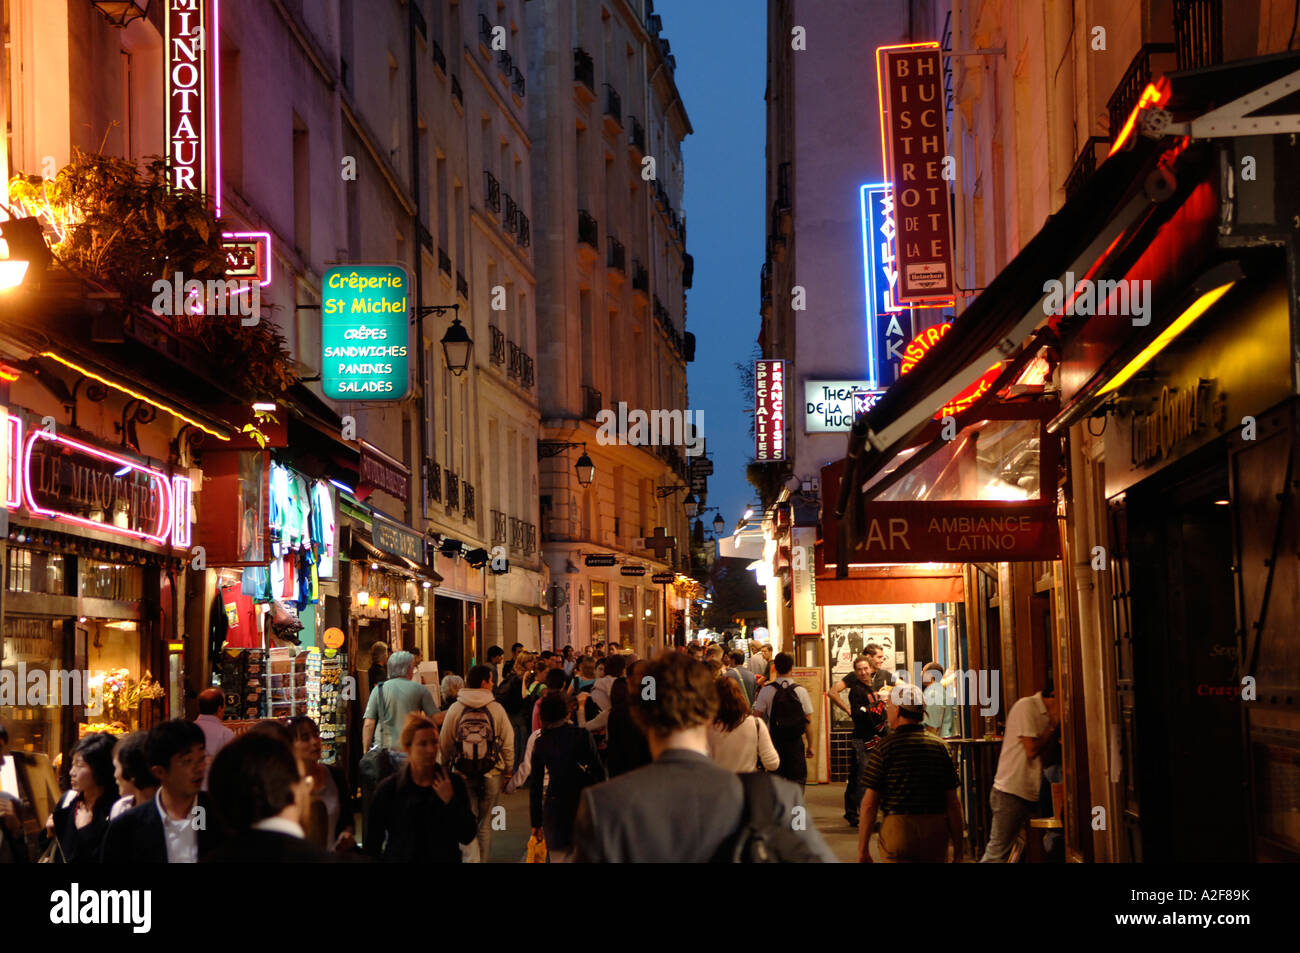 Paris, nightlife in the Latin quarter Stock Photo